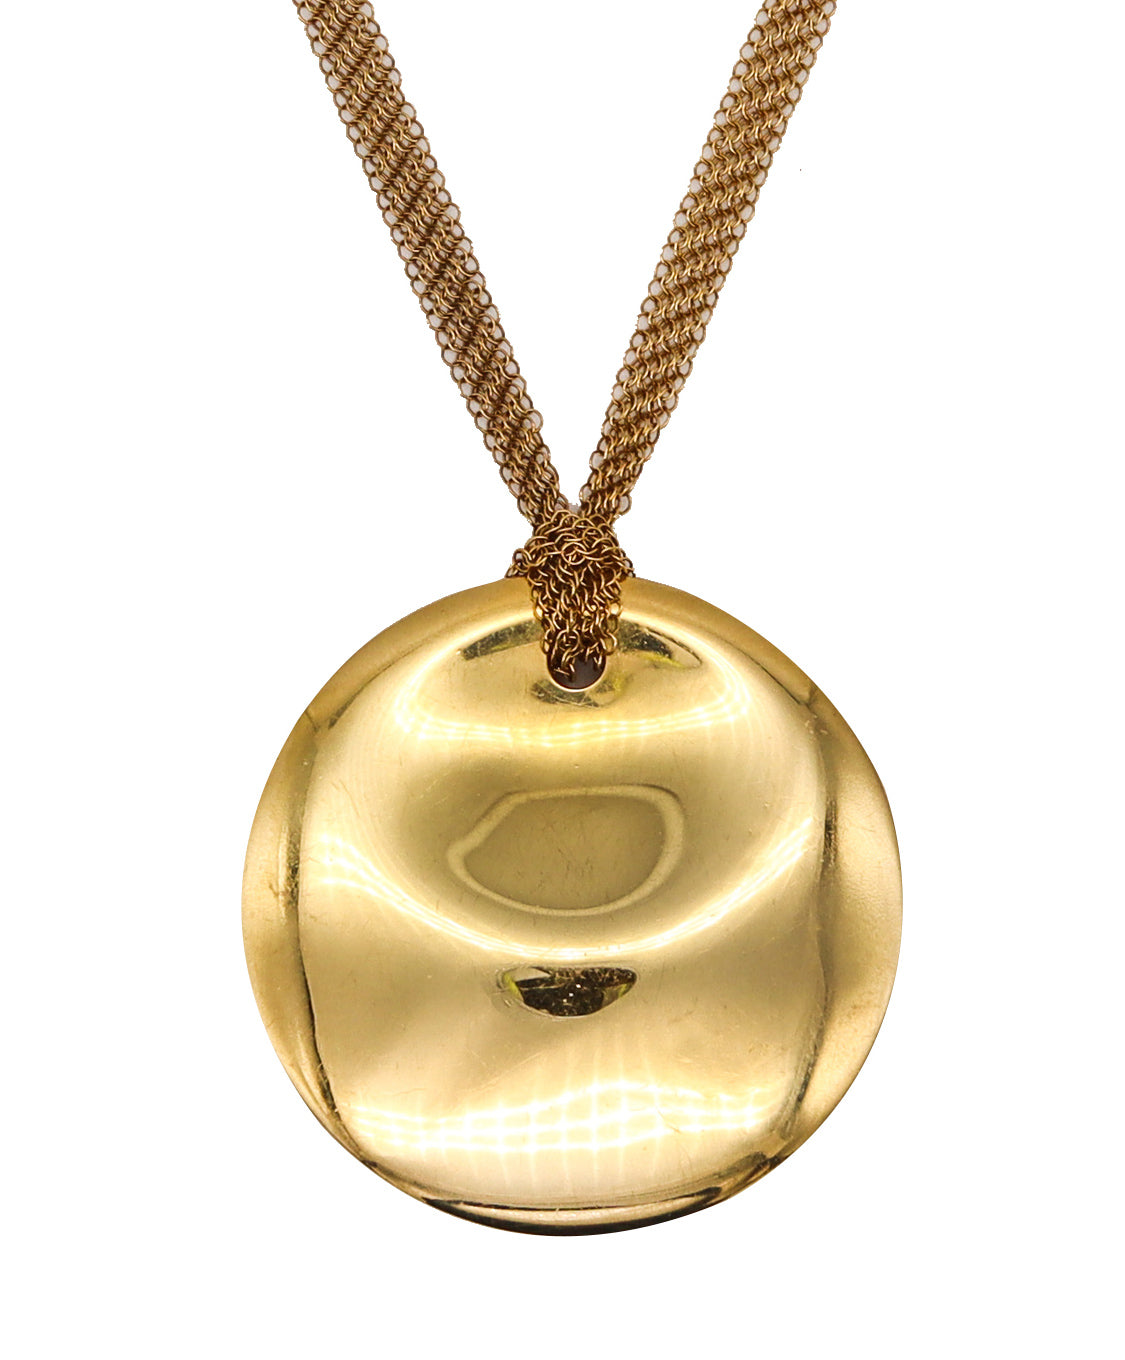 Elsa Peretti Mesh Necklace in 18K Gold, Small